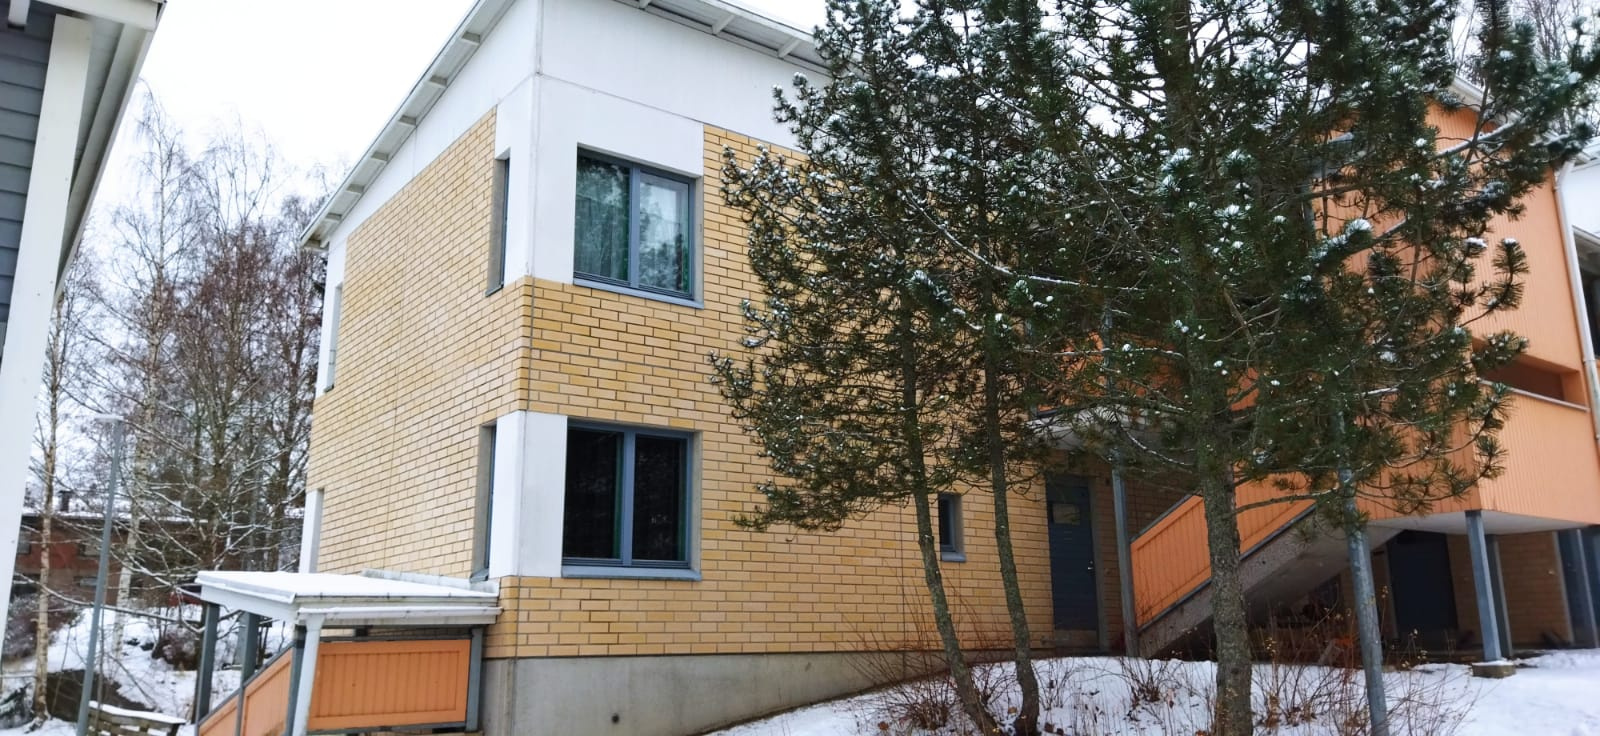 Вот так выглядит социальное жилье, которое предоставляют в Финляндии приезжим студентам